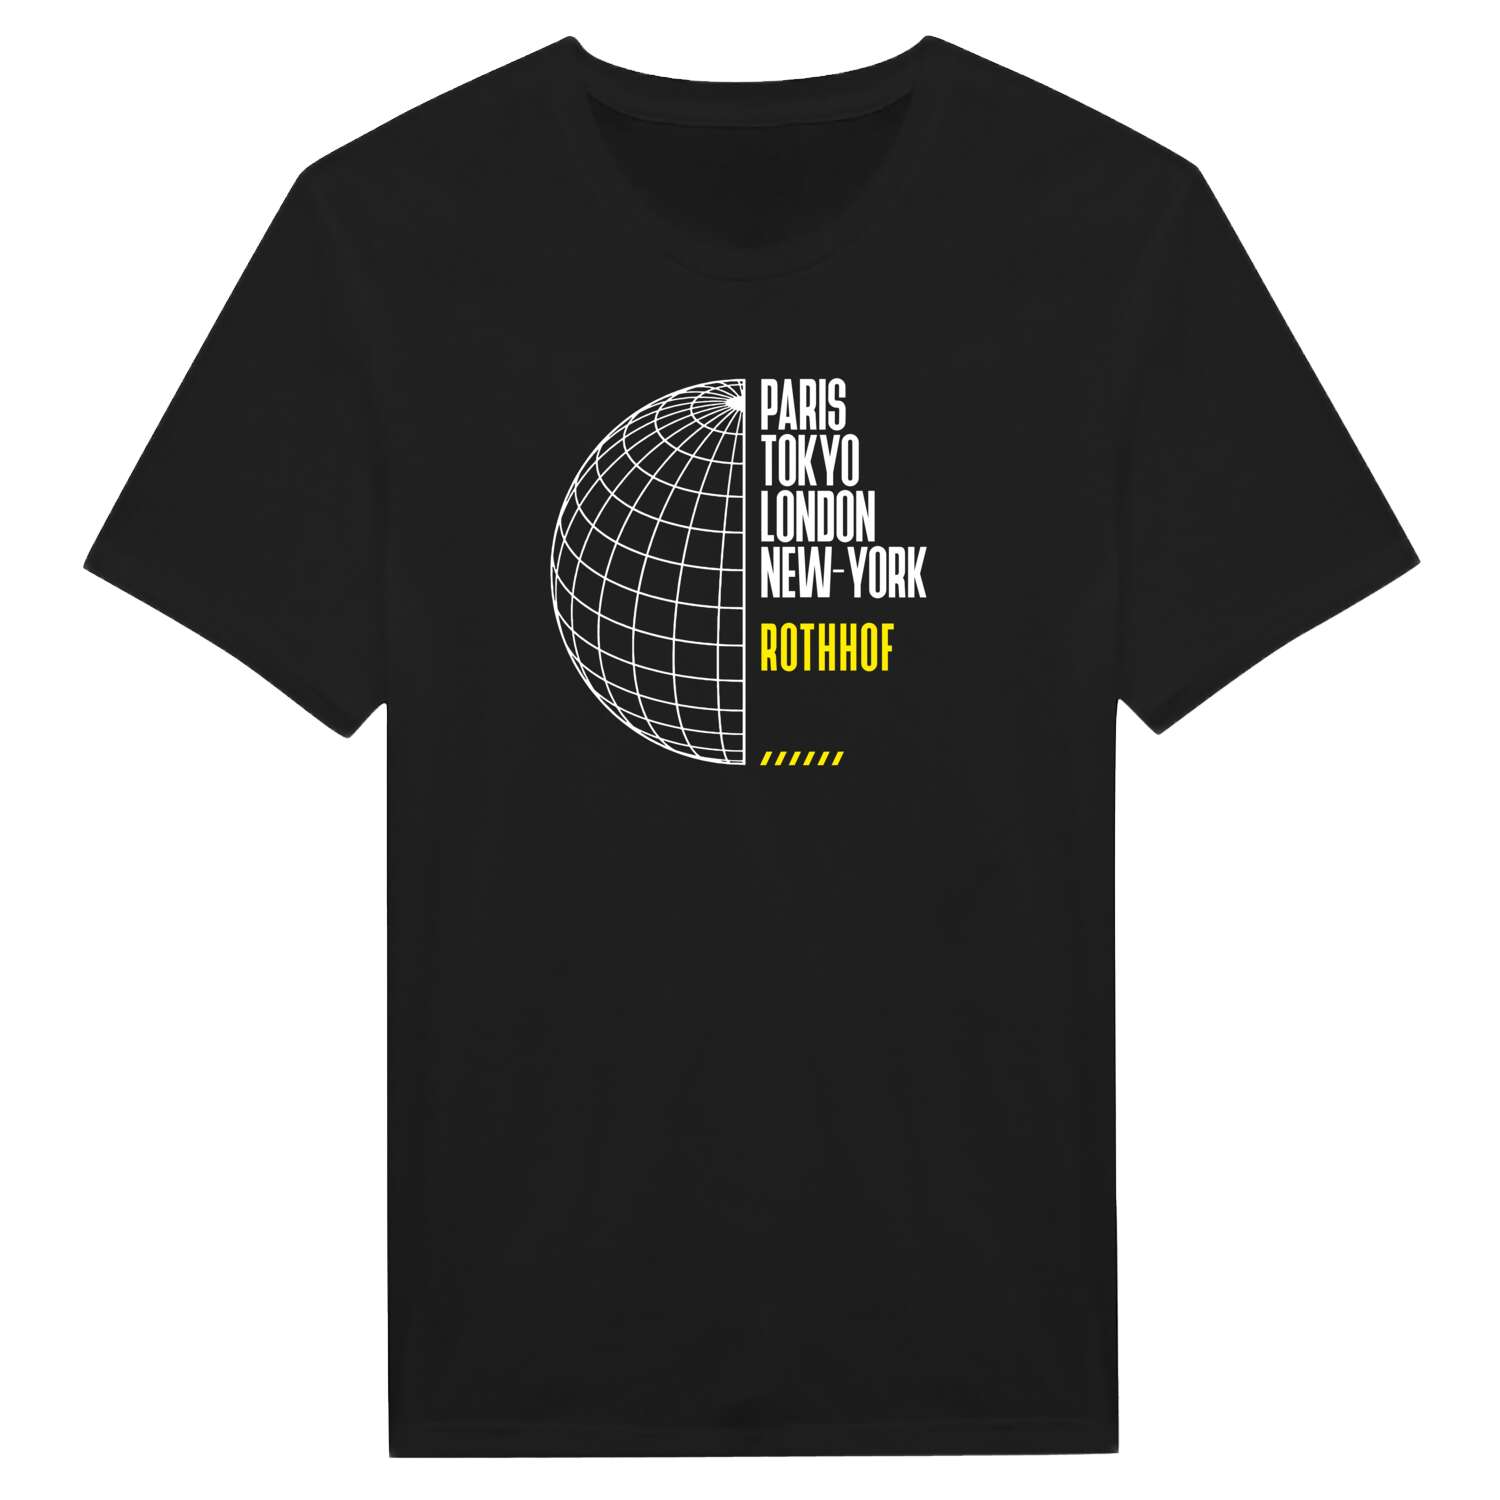 Rothhof T-Shirt »Paris Tokyo London«